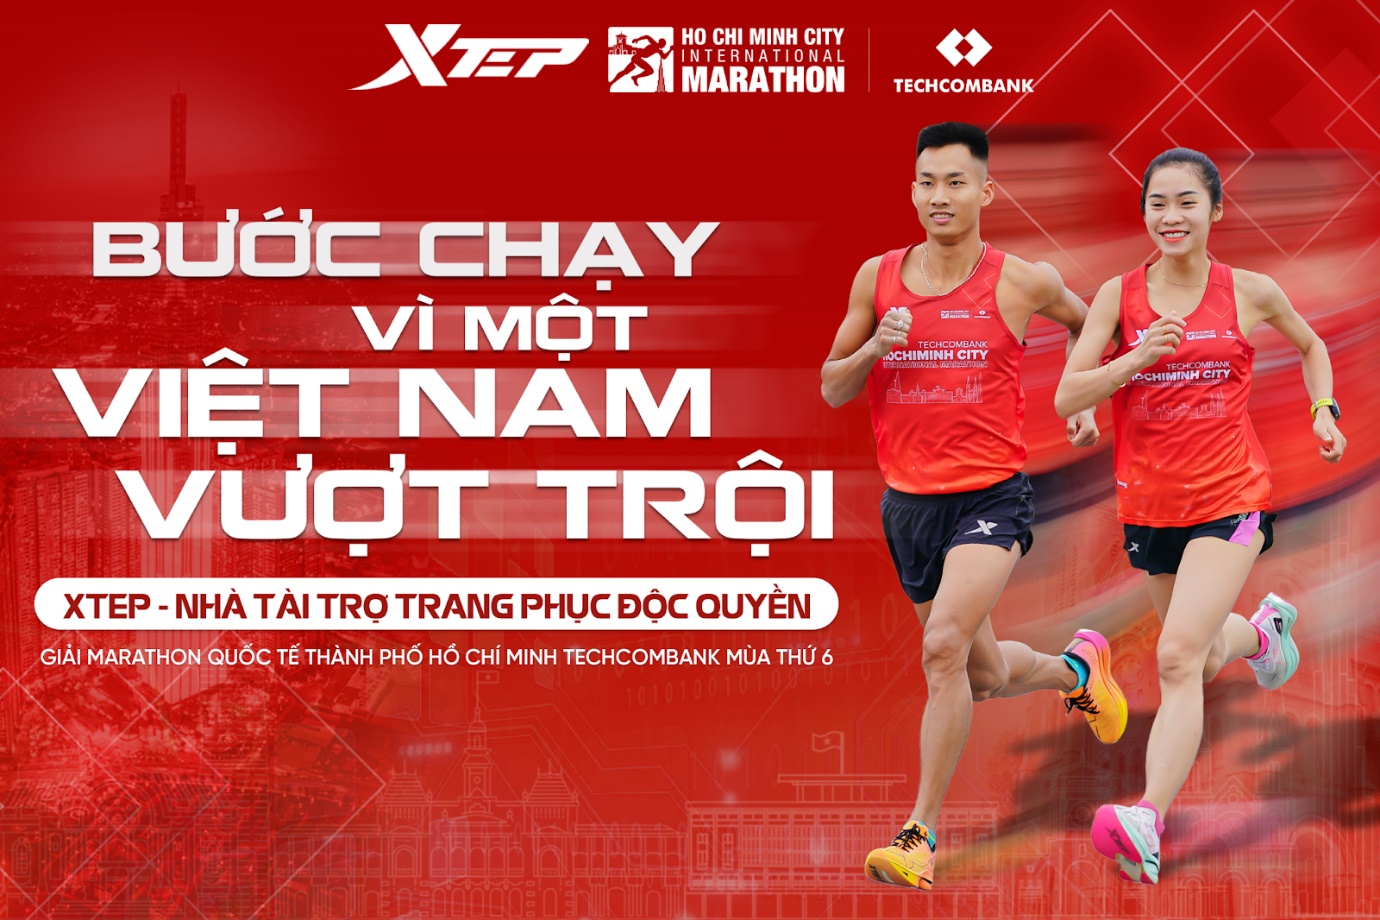 Xtep - Nhà tài trợ trang phục độc quyền Giải Marathon Quốc tế TP. HCM Techcombank